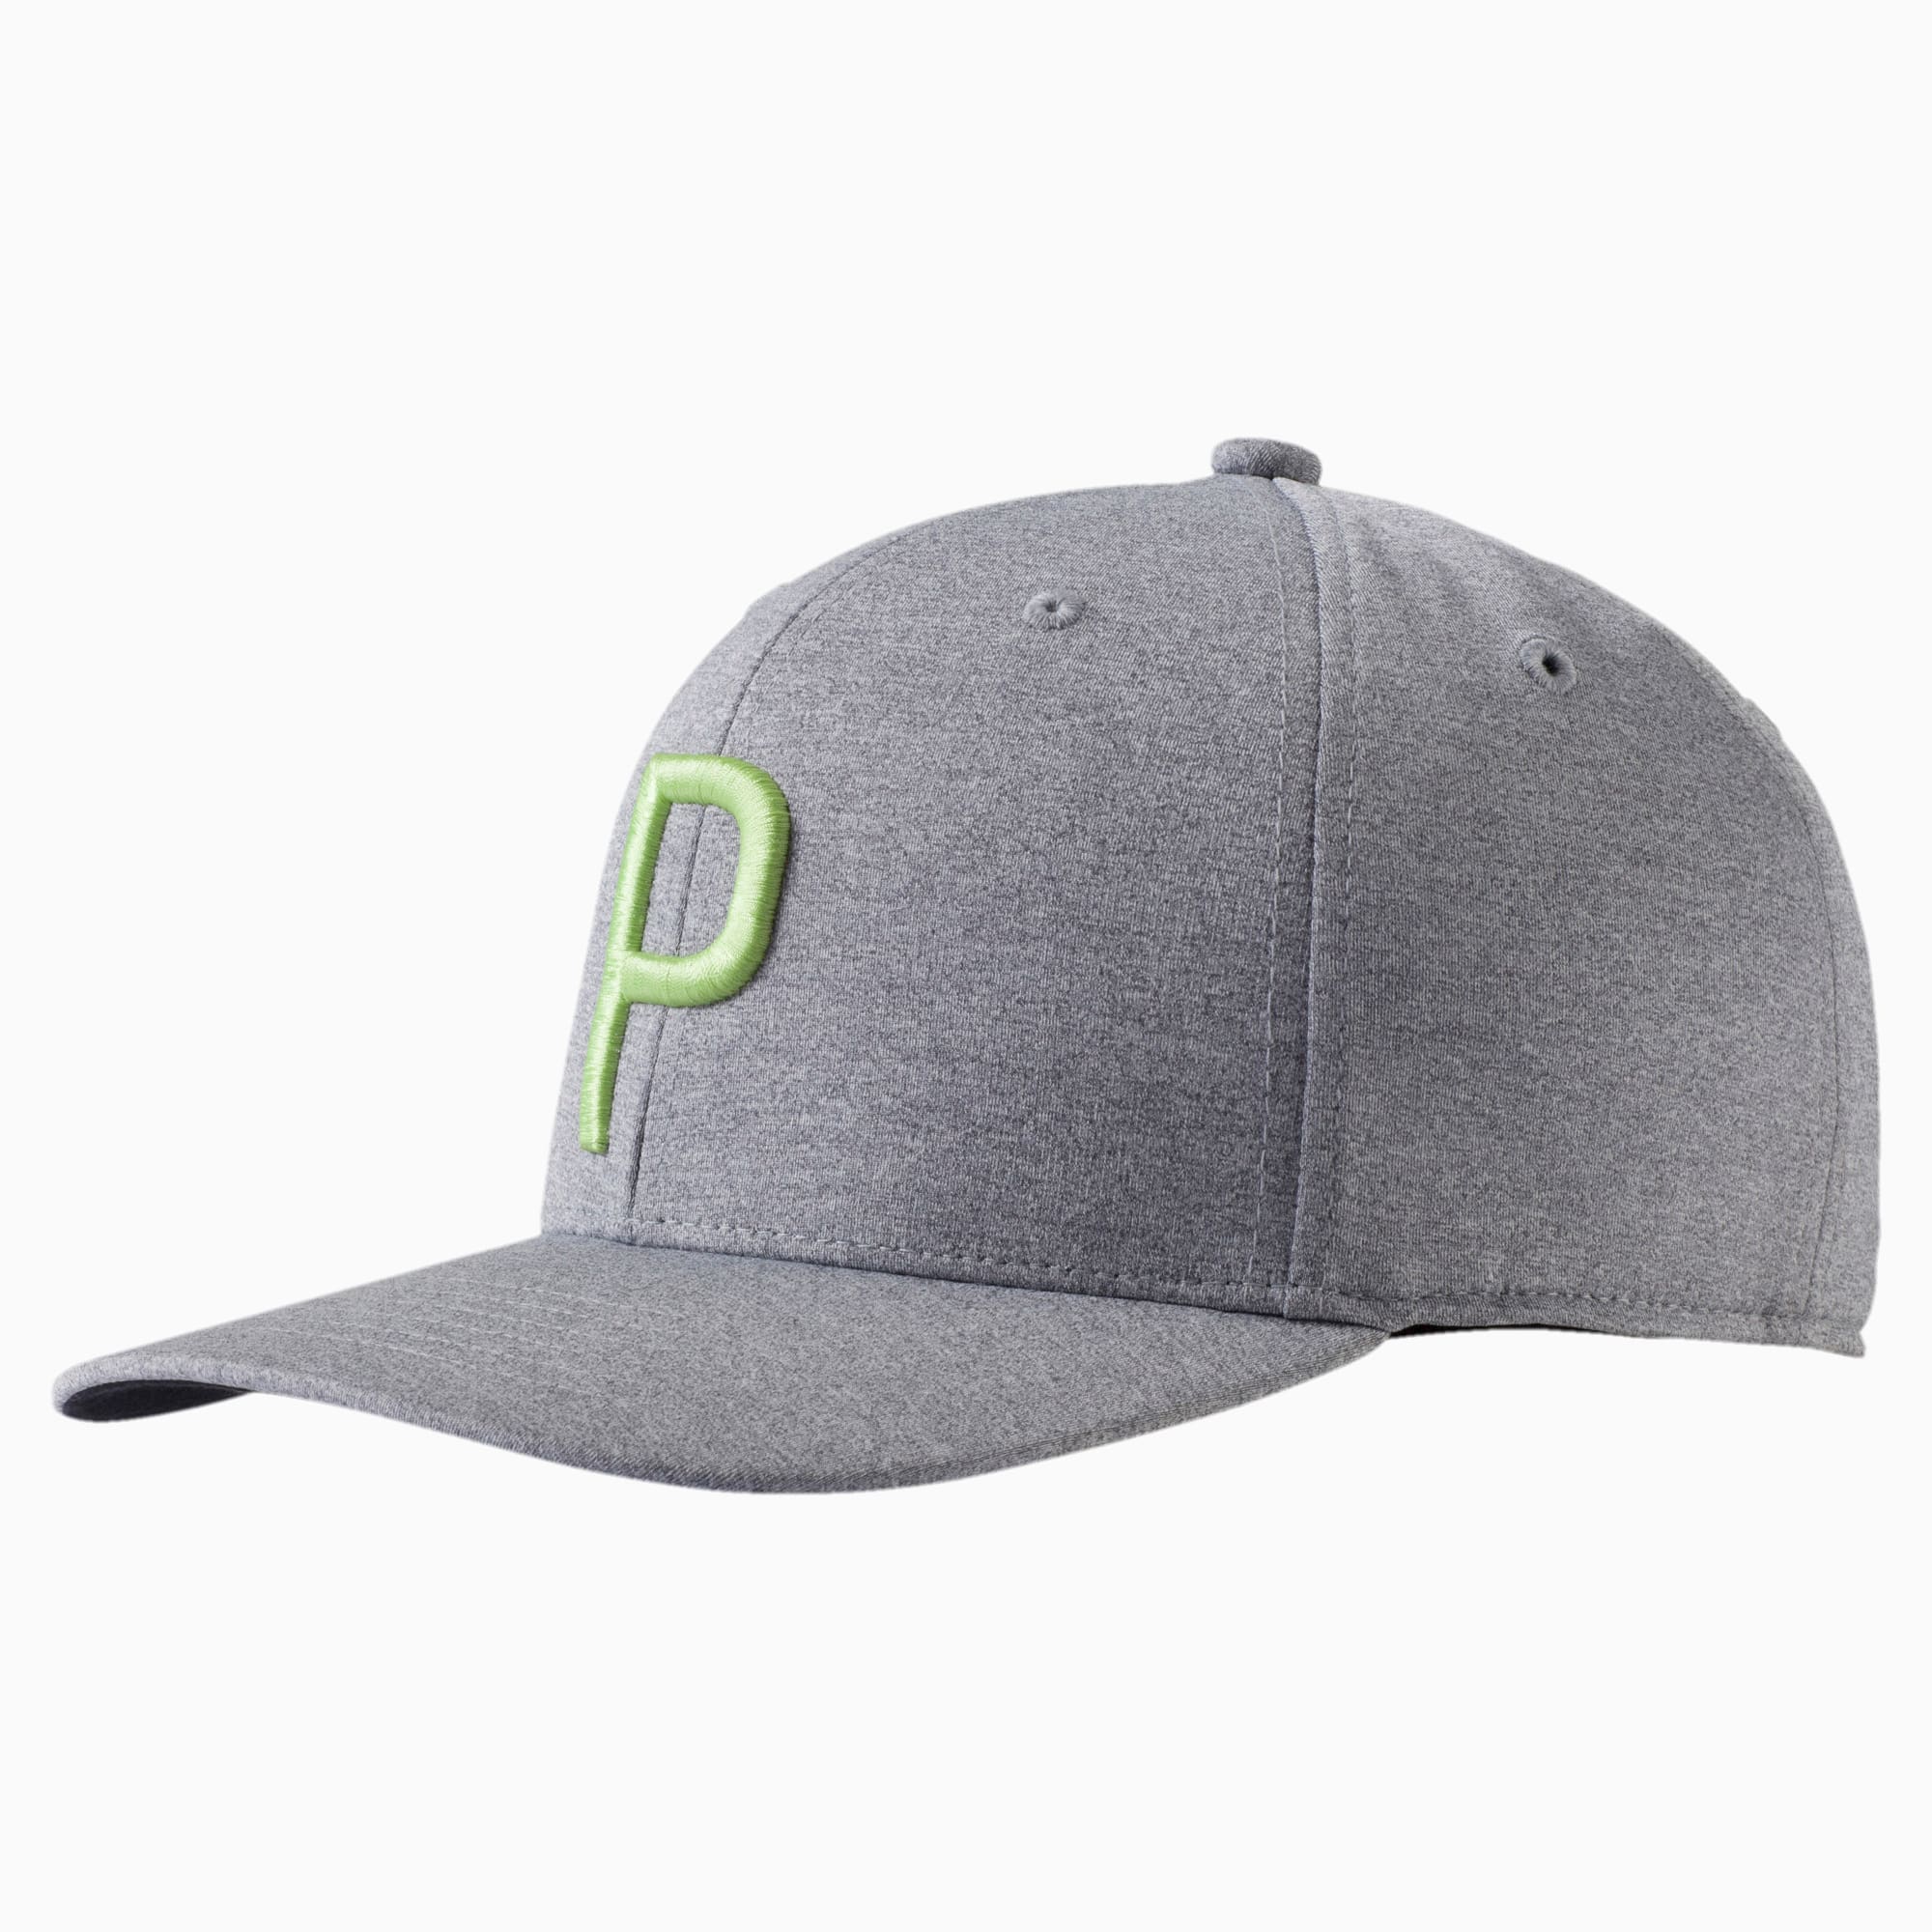 puma tour exclusive hat